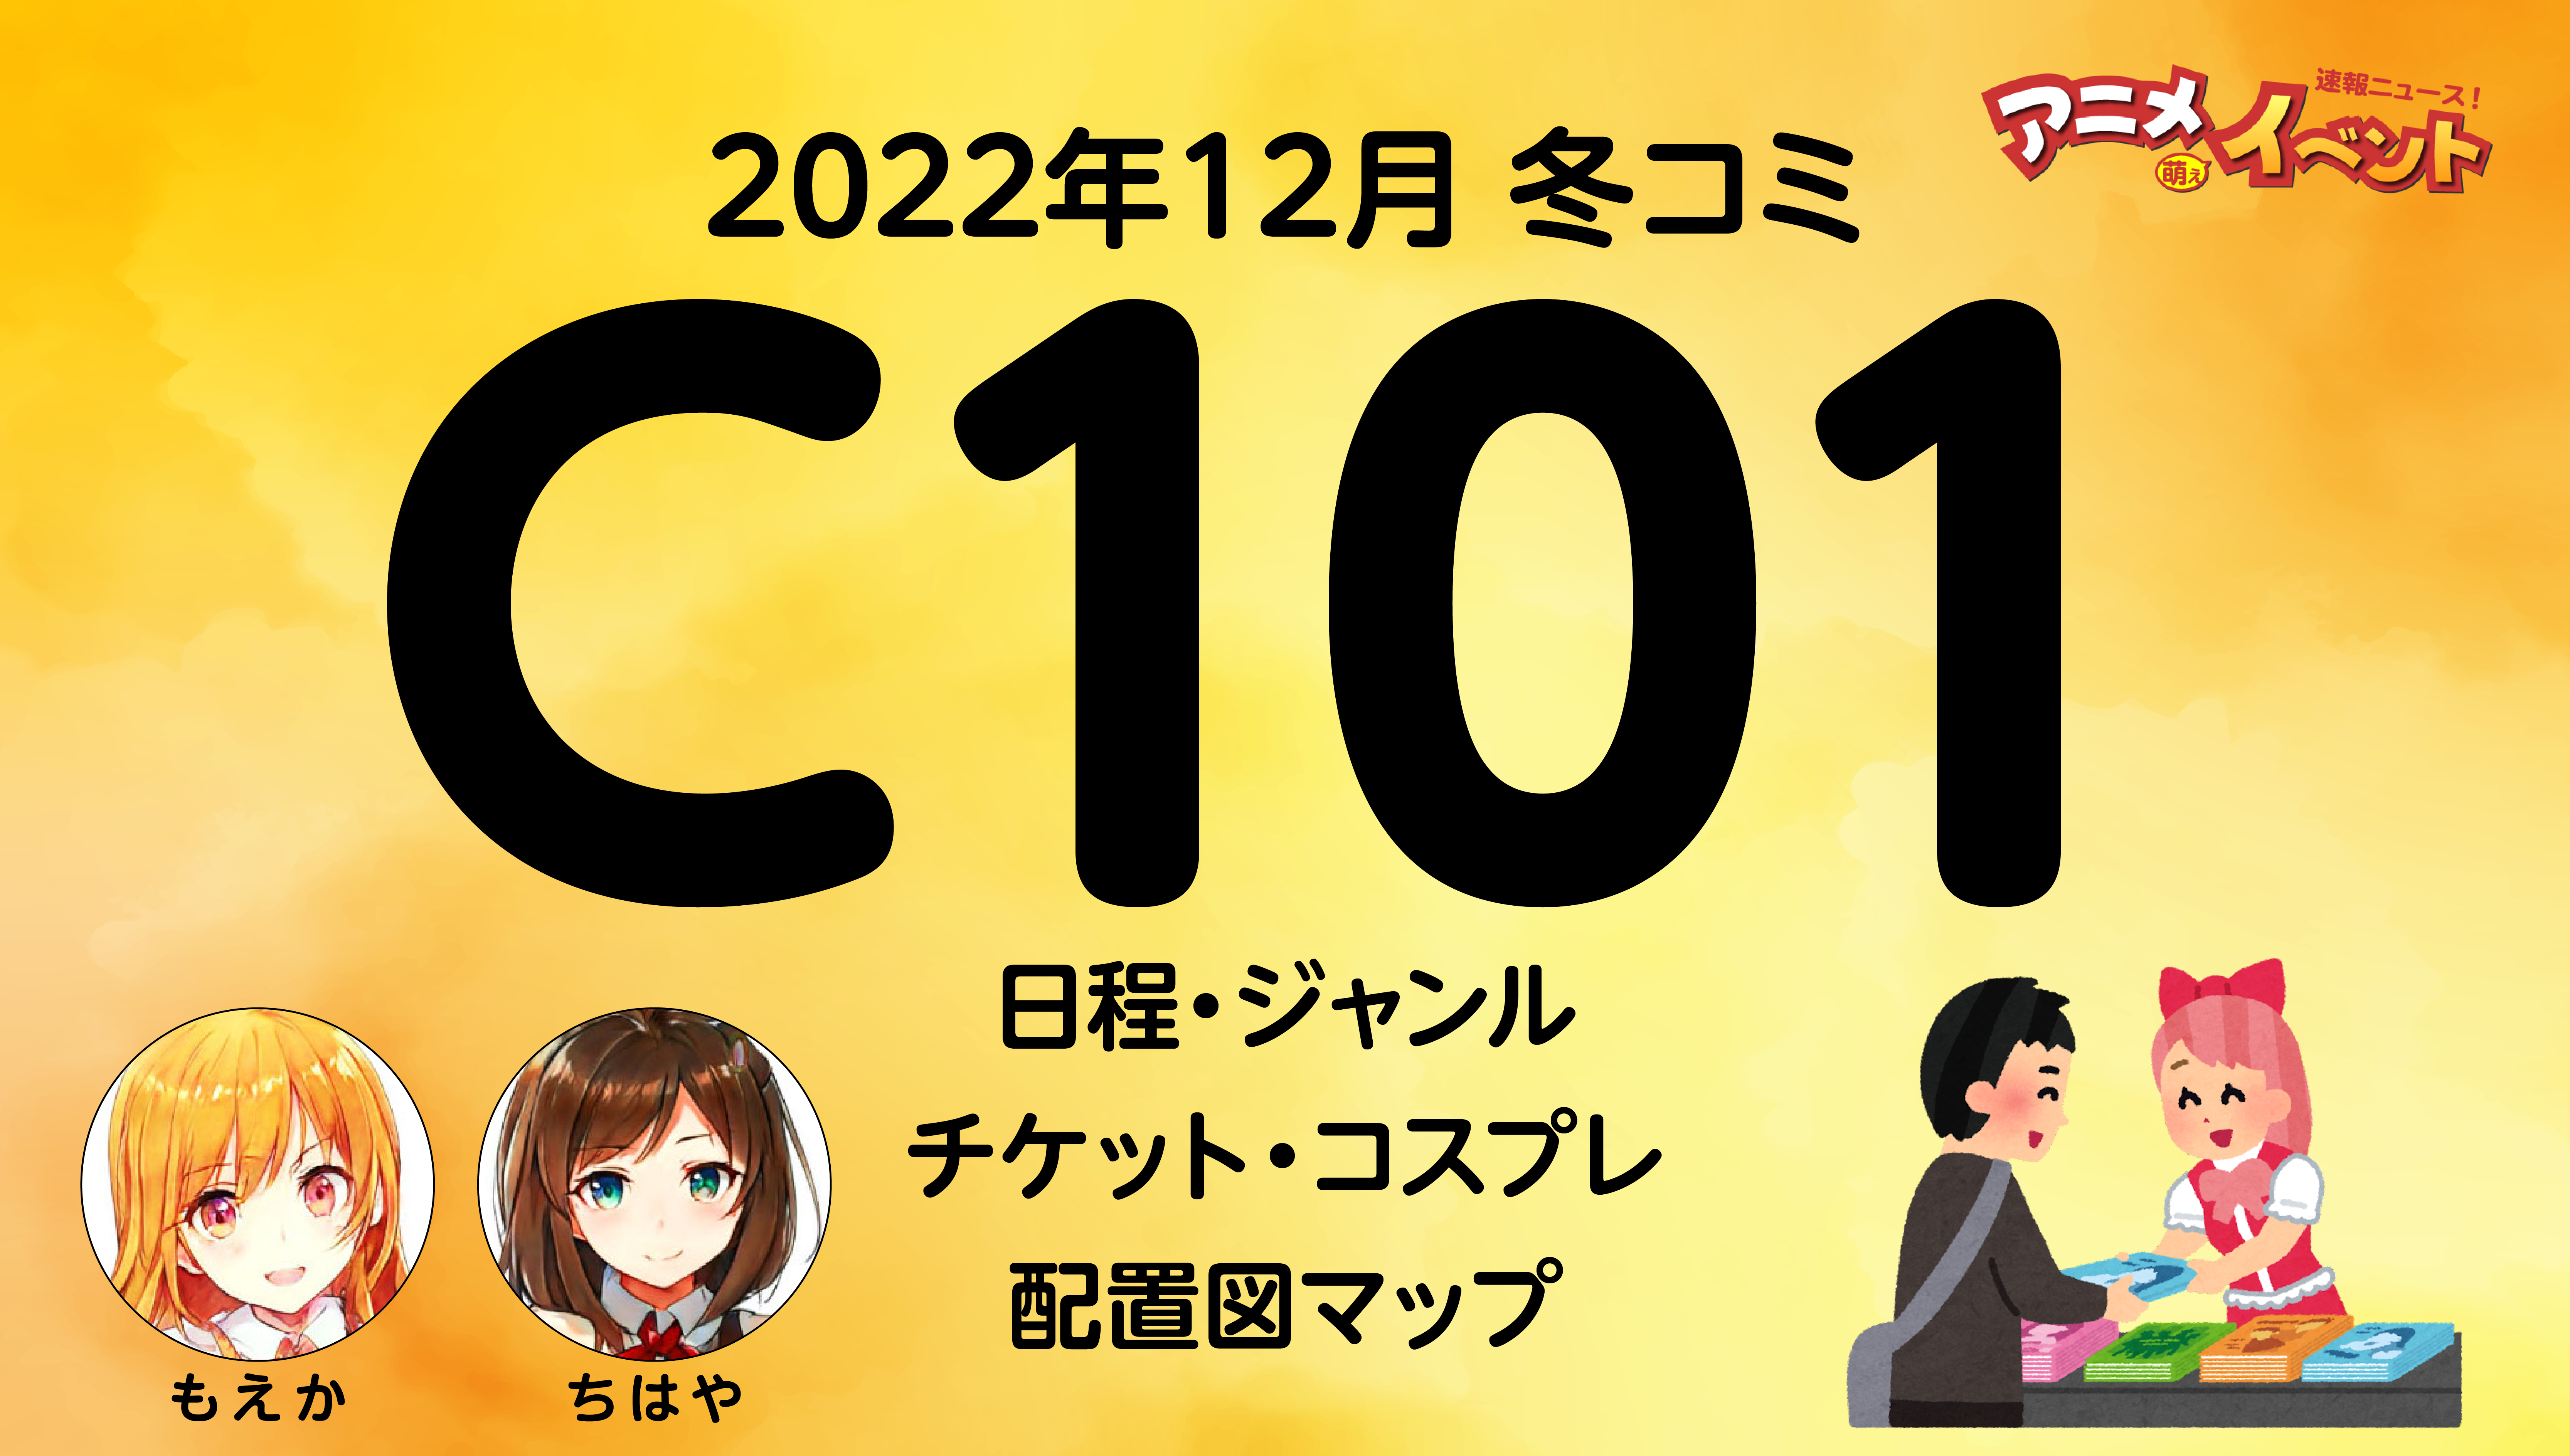 309C101 コミケ コミックマーケット チケット 通行証 1日目 2日目